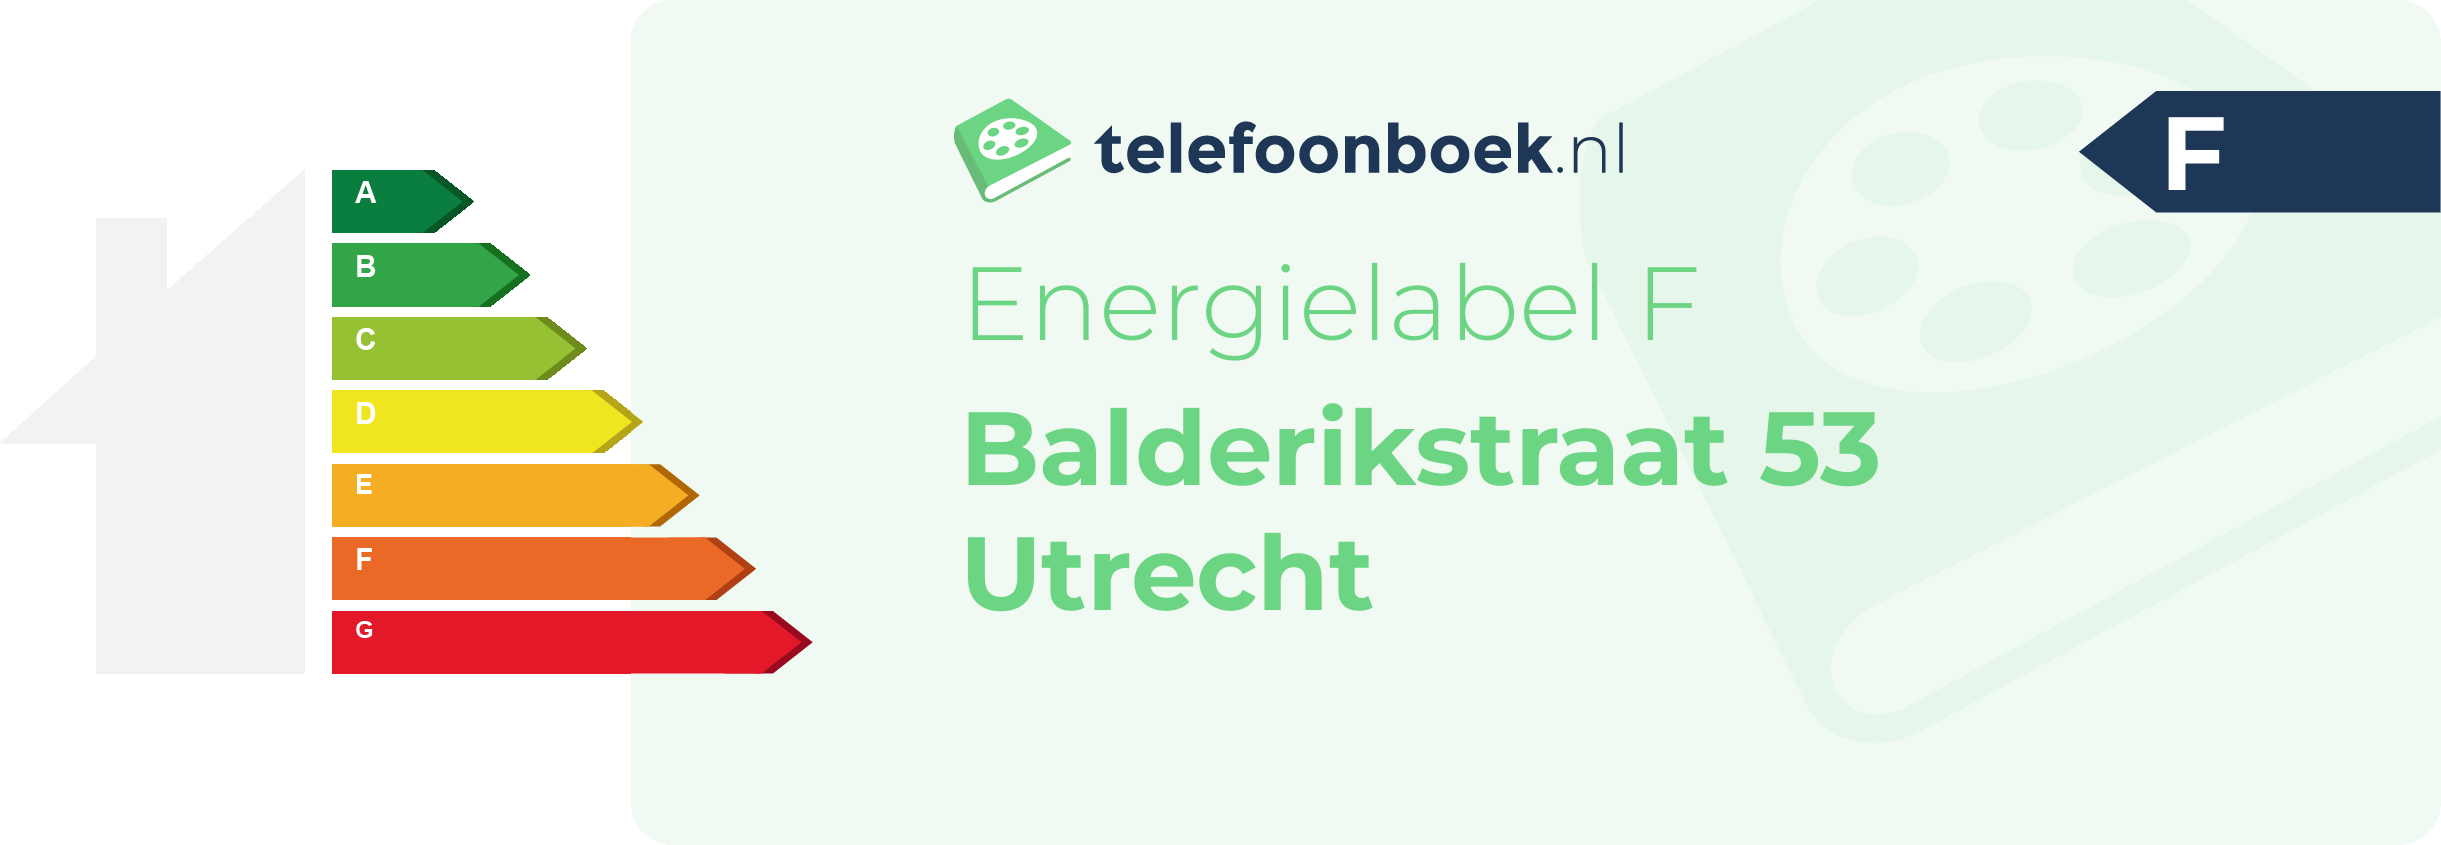 Energielabel Balderikstraat 53 Utrecht